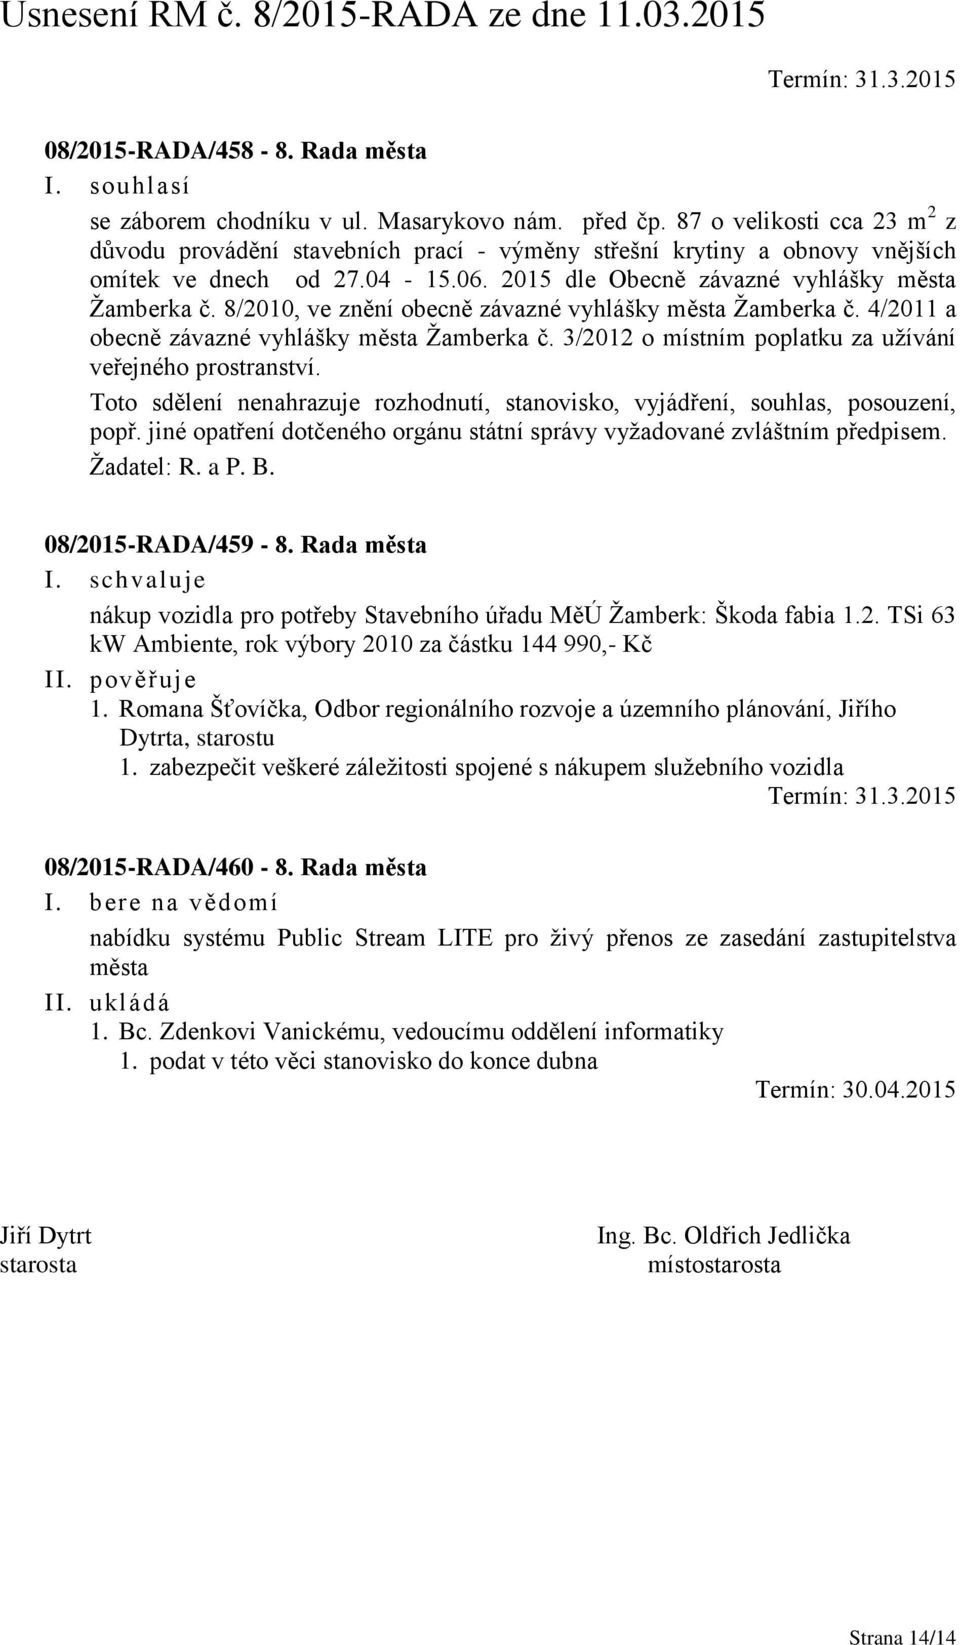 8/2010, ve znění obecně závazné vyhlášky města Žamberka č. 4/2011 a obecně závazné vyhlášky města Žamberka č. 3/2012 o místním poplatku za užívání veřejného prostranství.